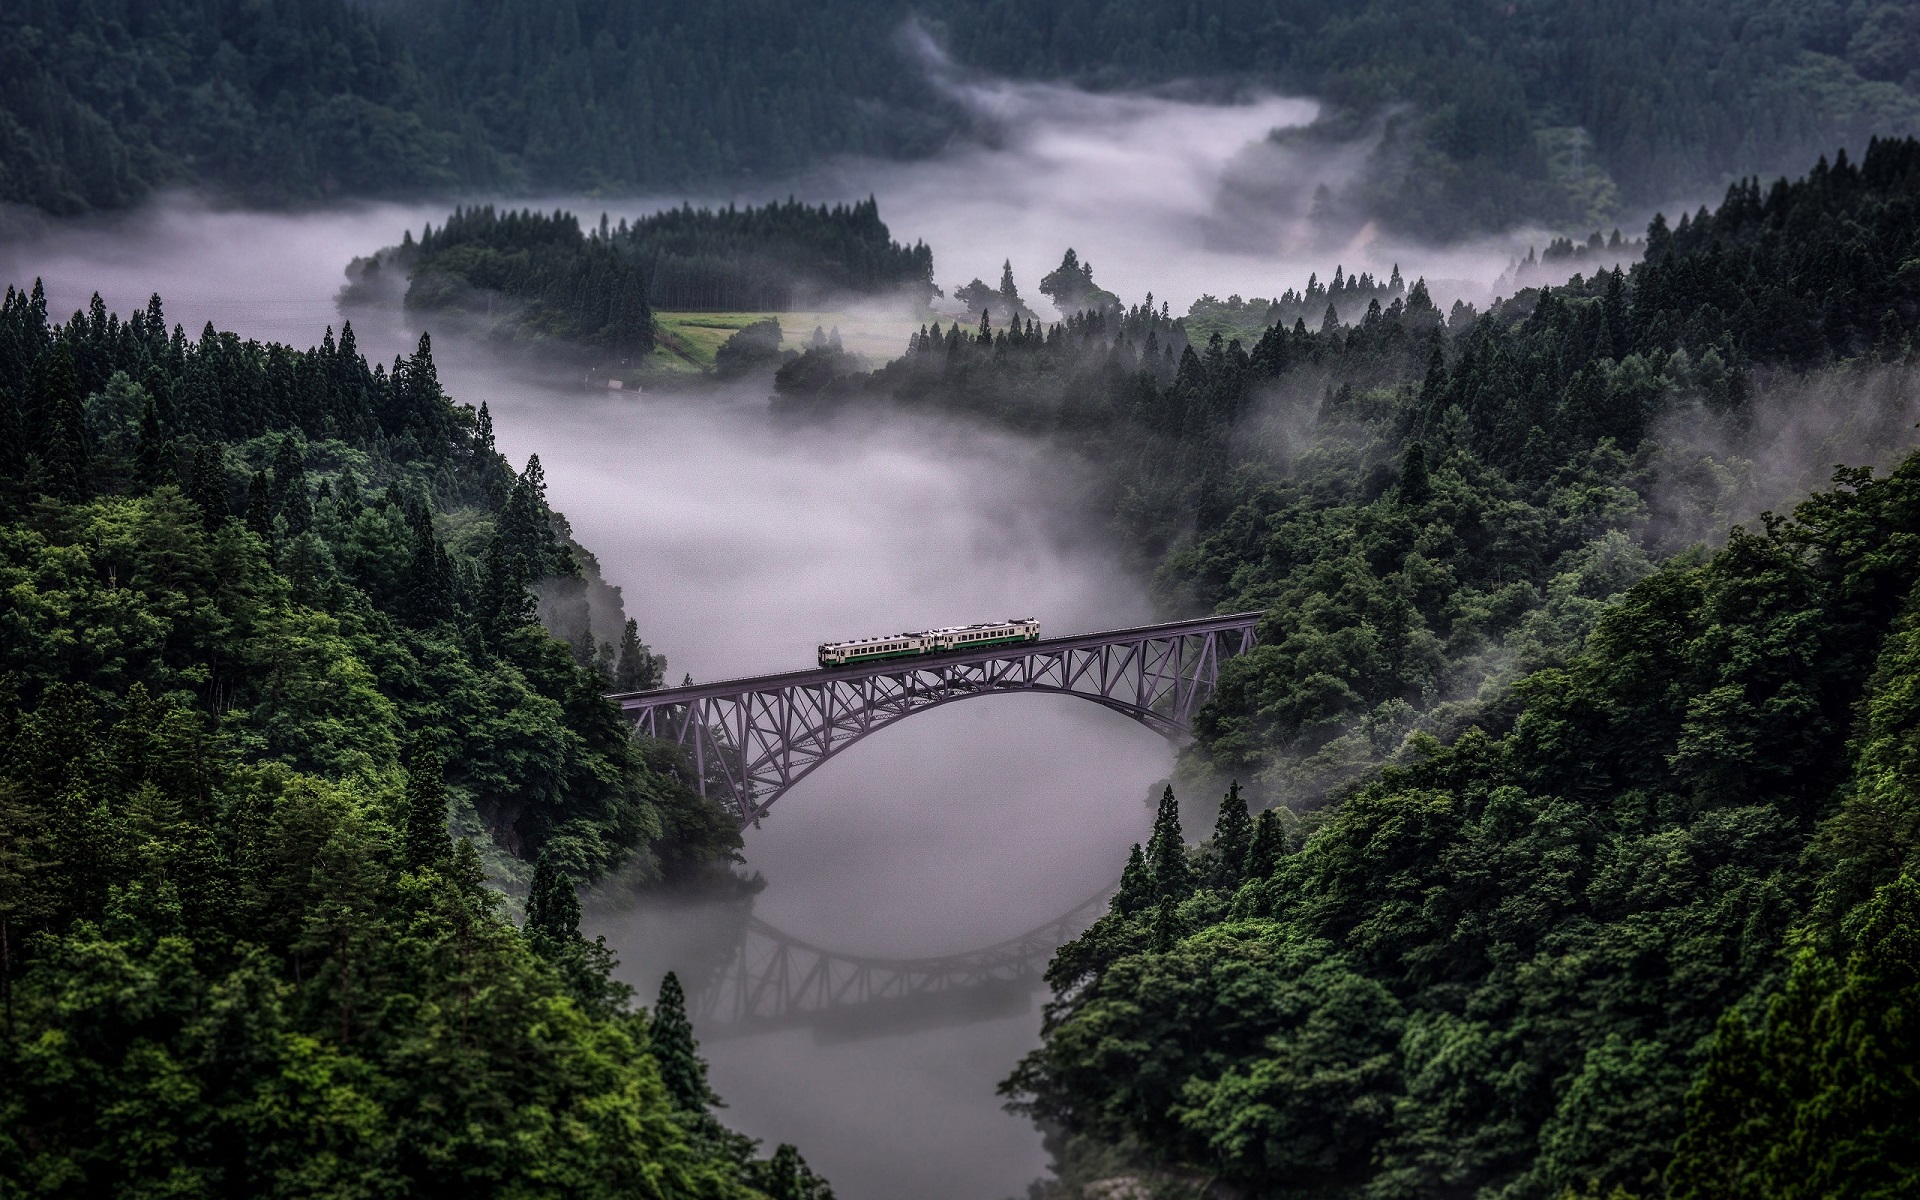 General 1920x1200 nature landscape train bridge forest mist reflection river